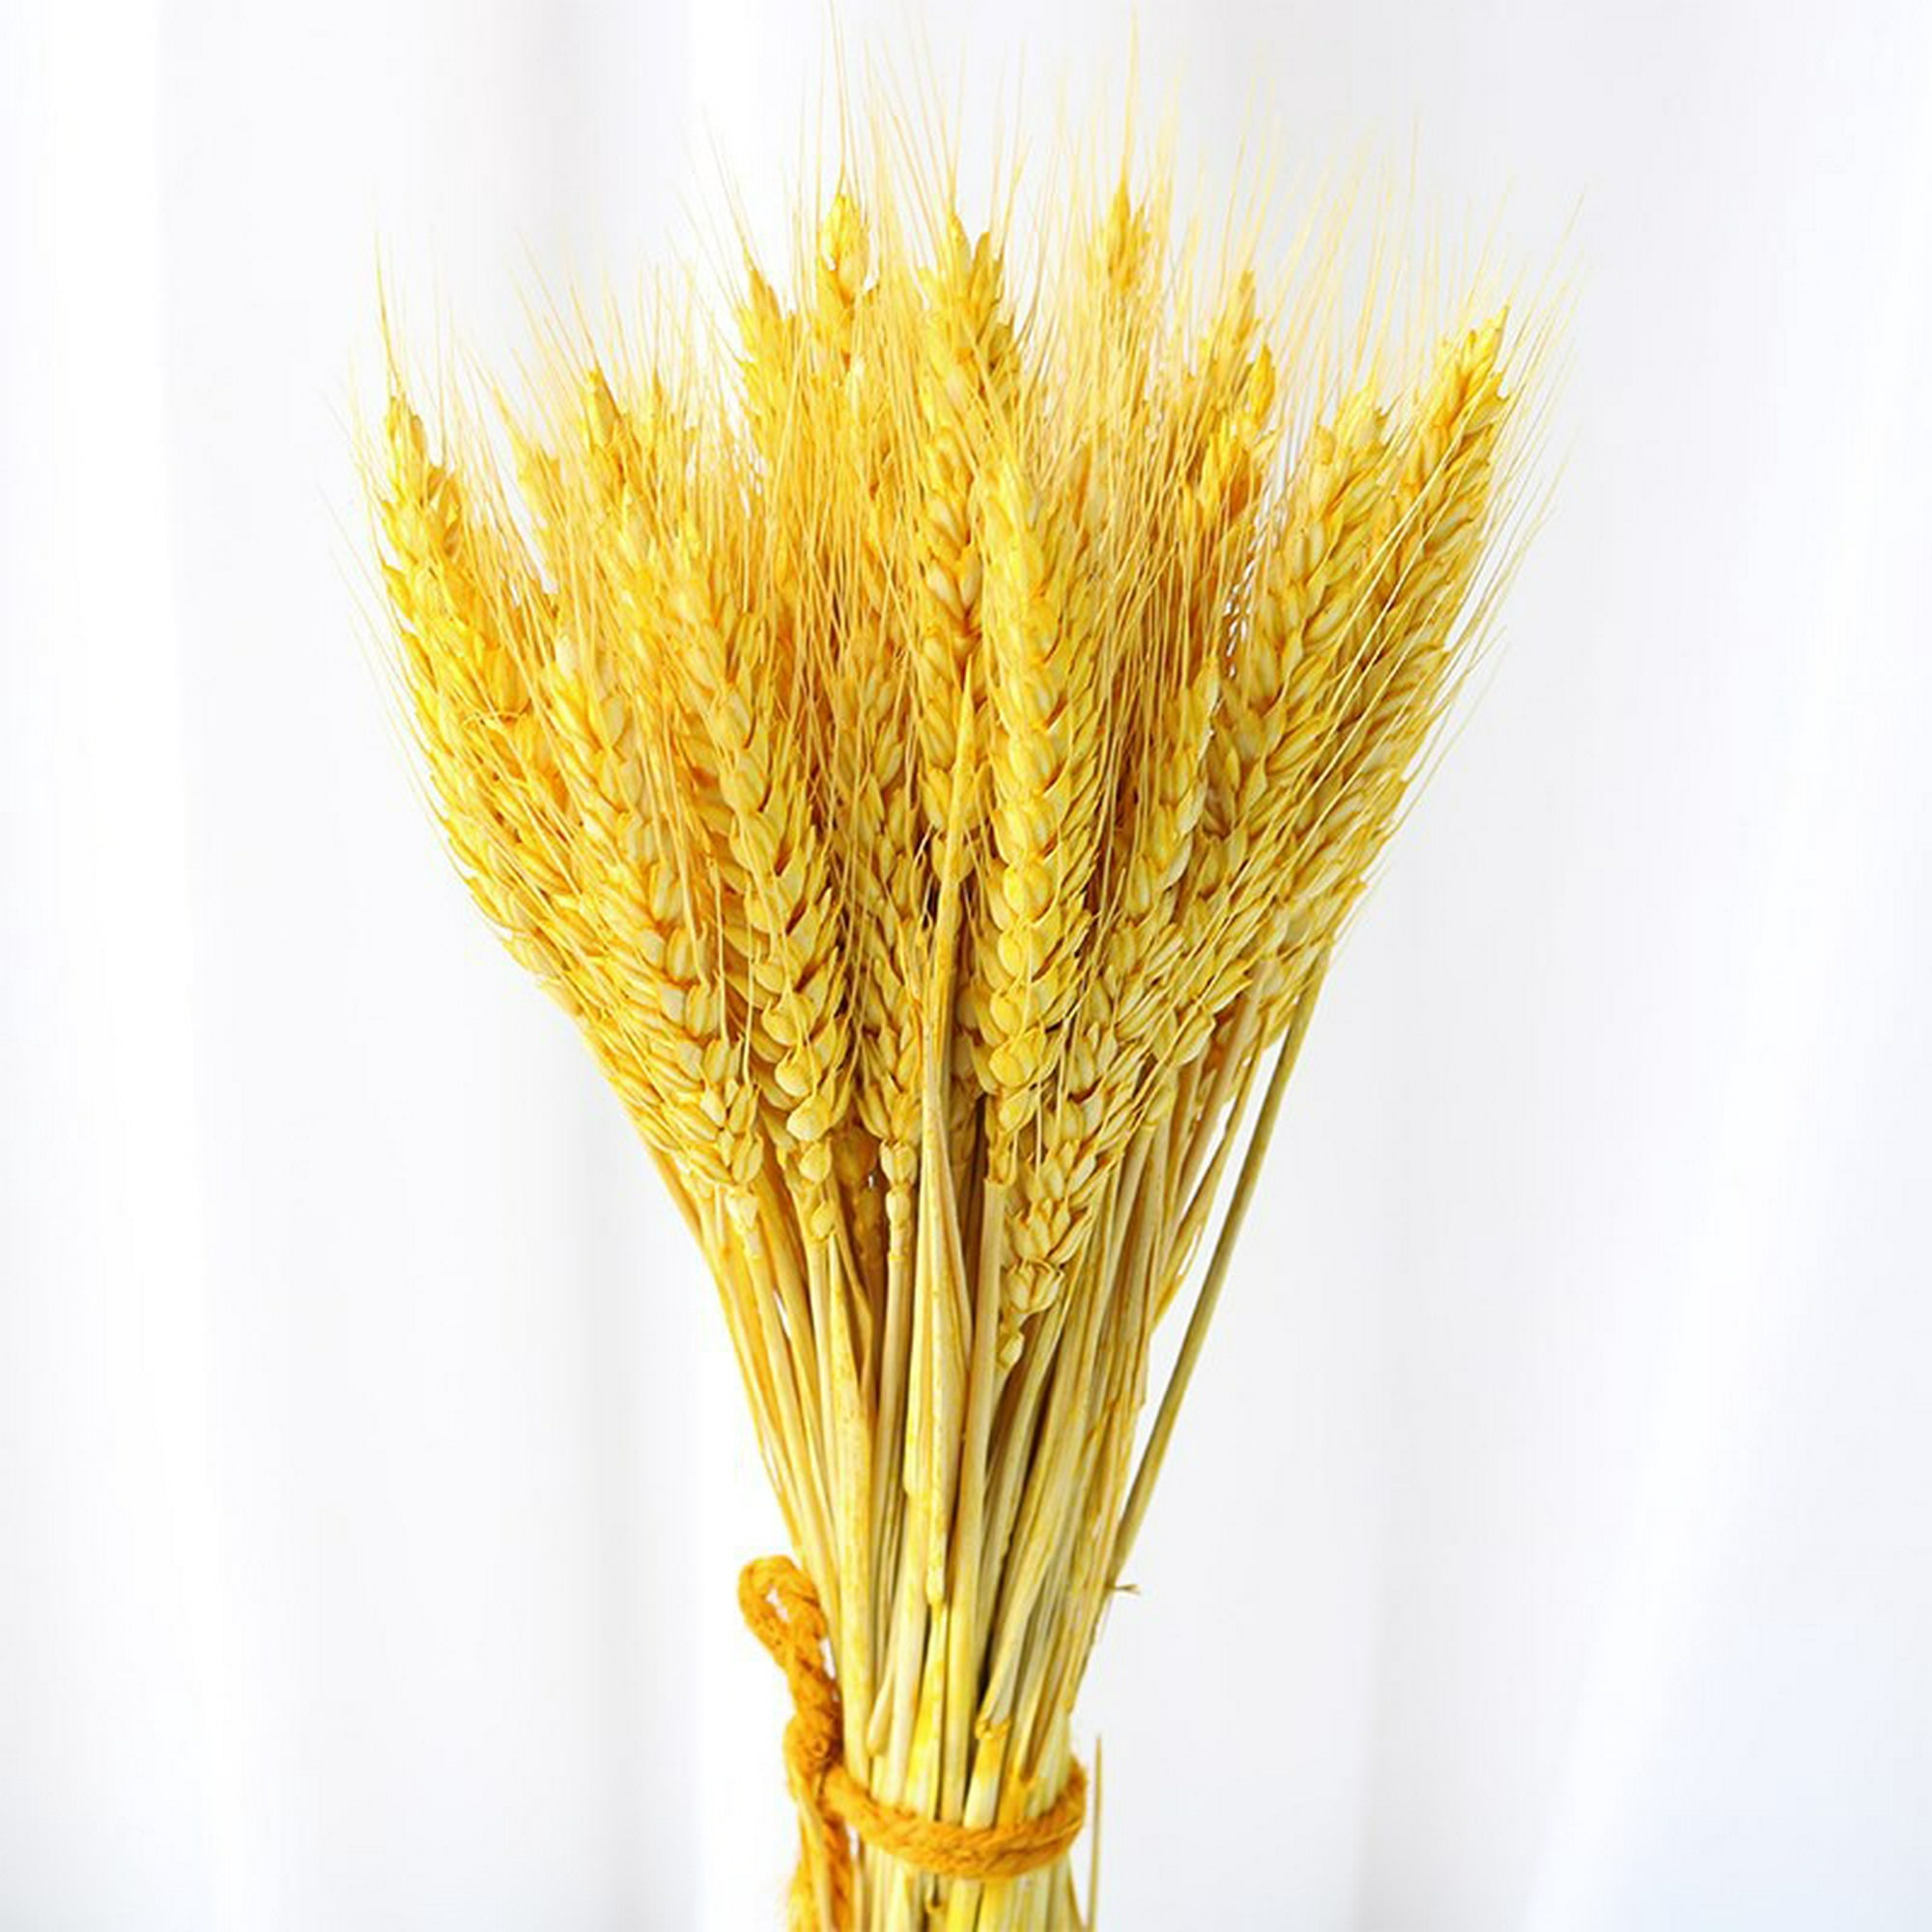 Espigas de trigo secas